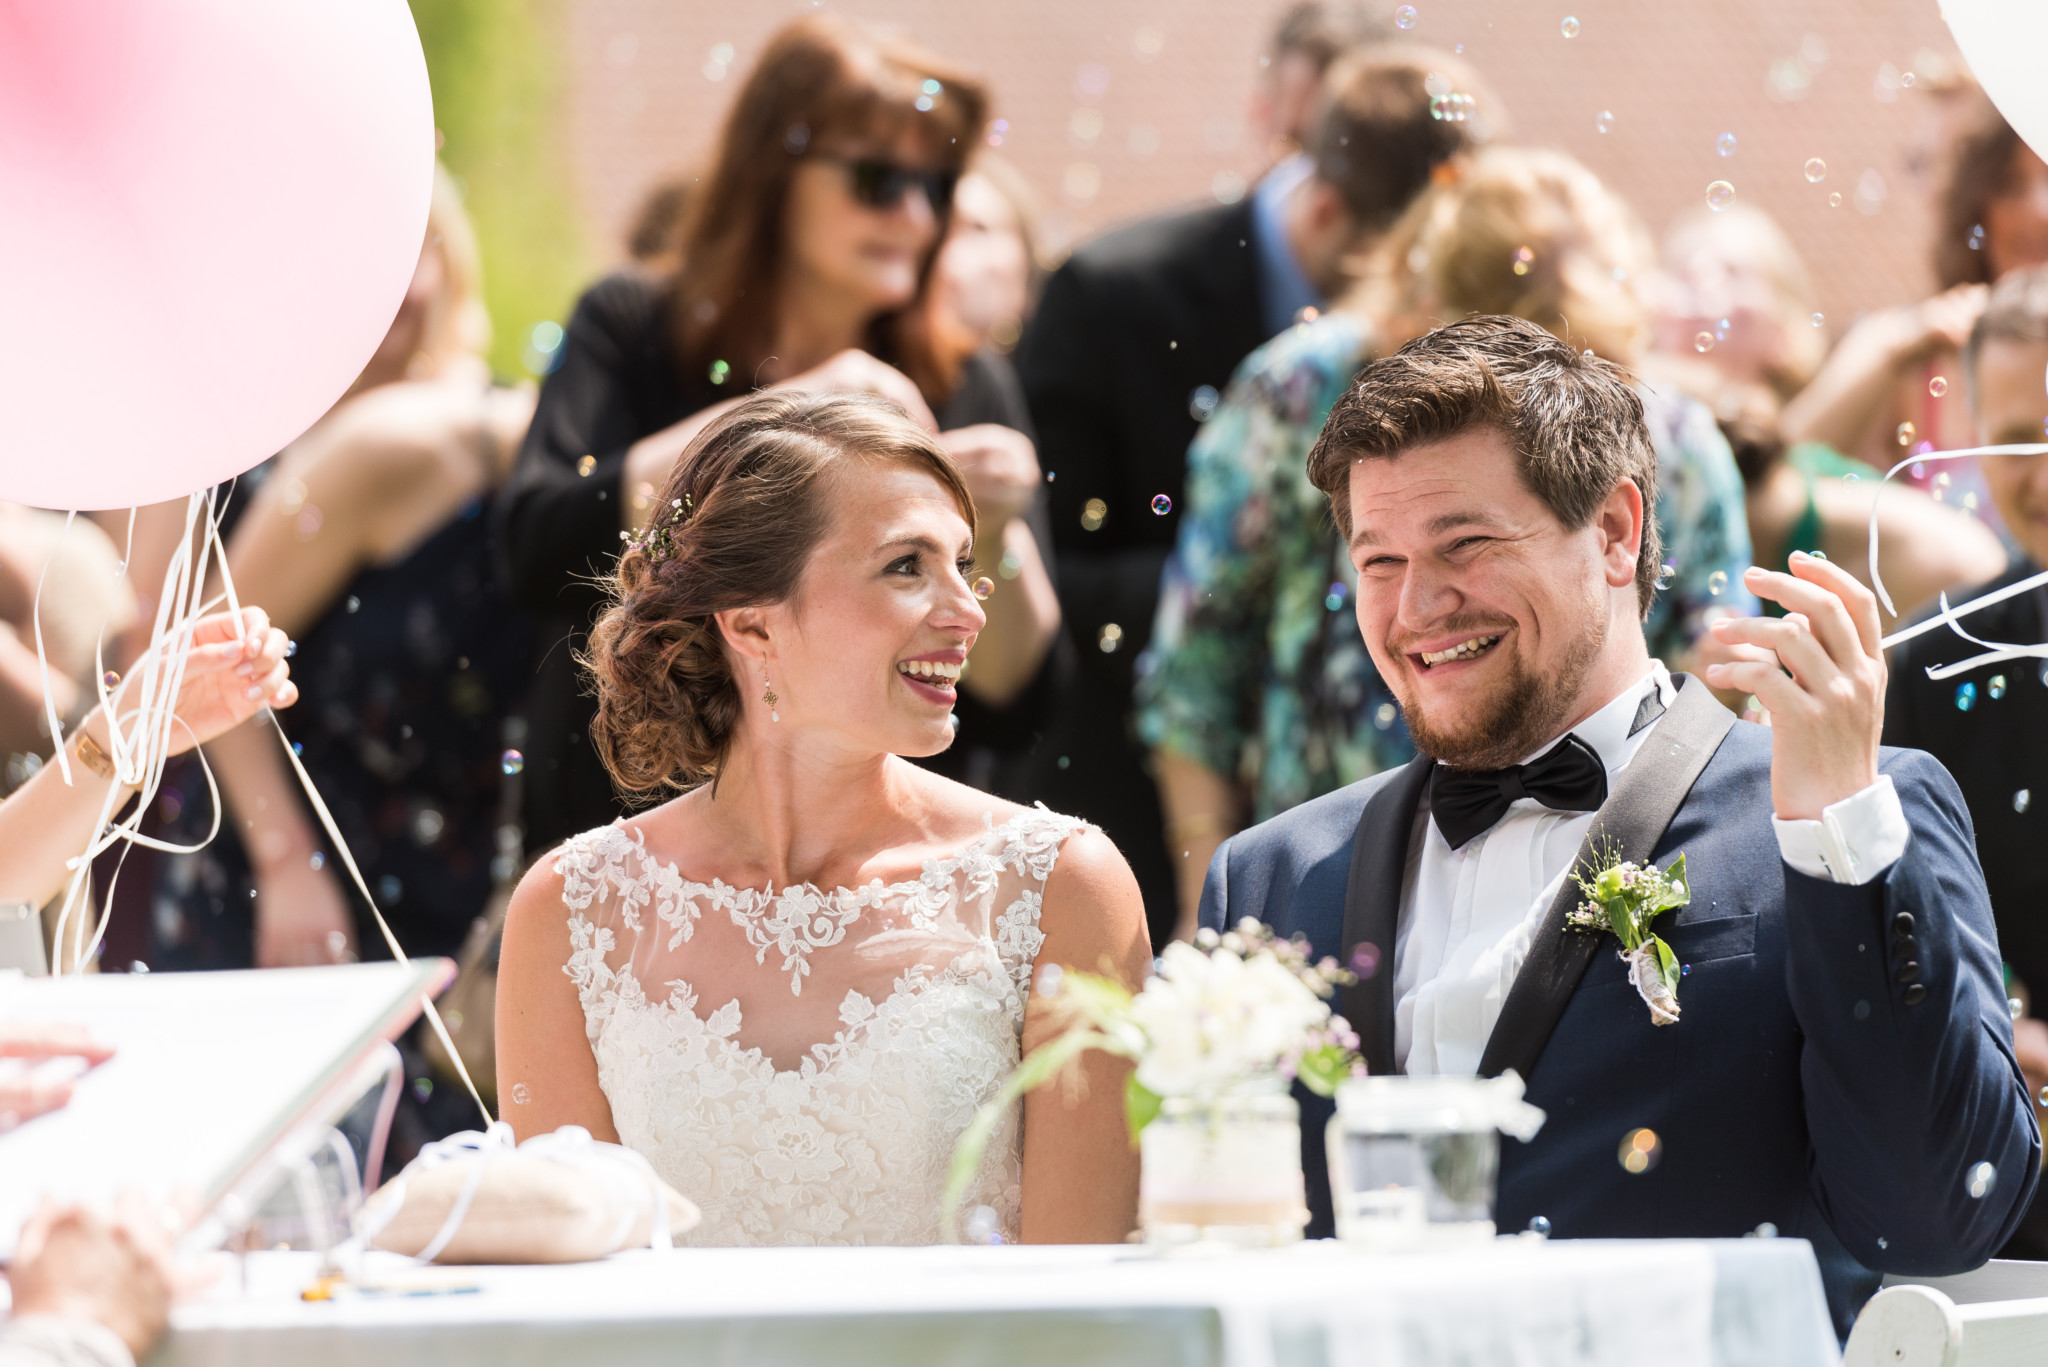 Svenja und ben hochzeitsfotos hochzeitsfotograf wedding photographer göttingen 